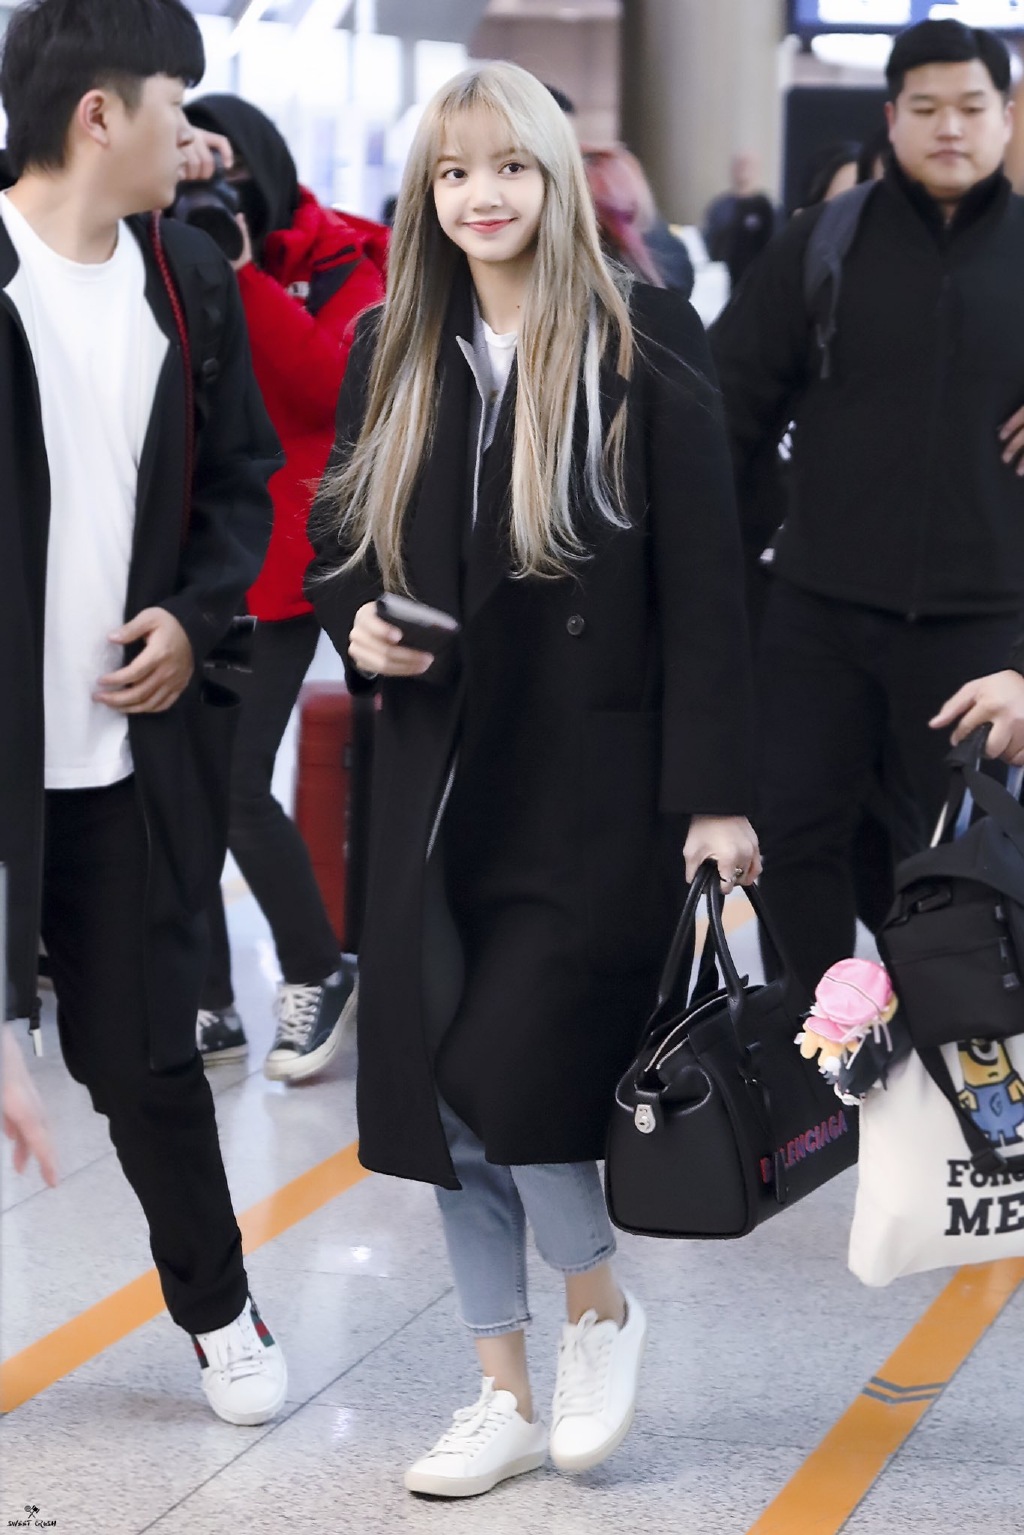 韩国女团blackpink成员lisa现身机场:笑容灿烂呆萌,宛如洋娃娃